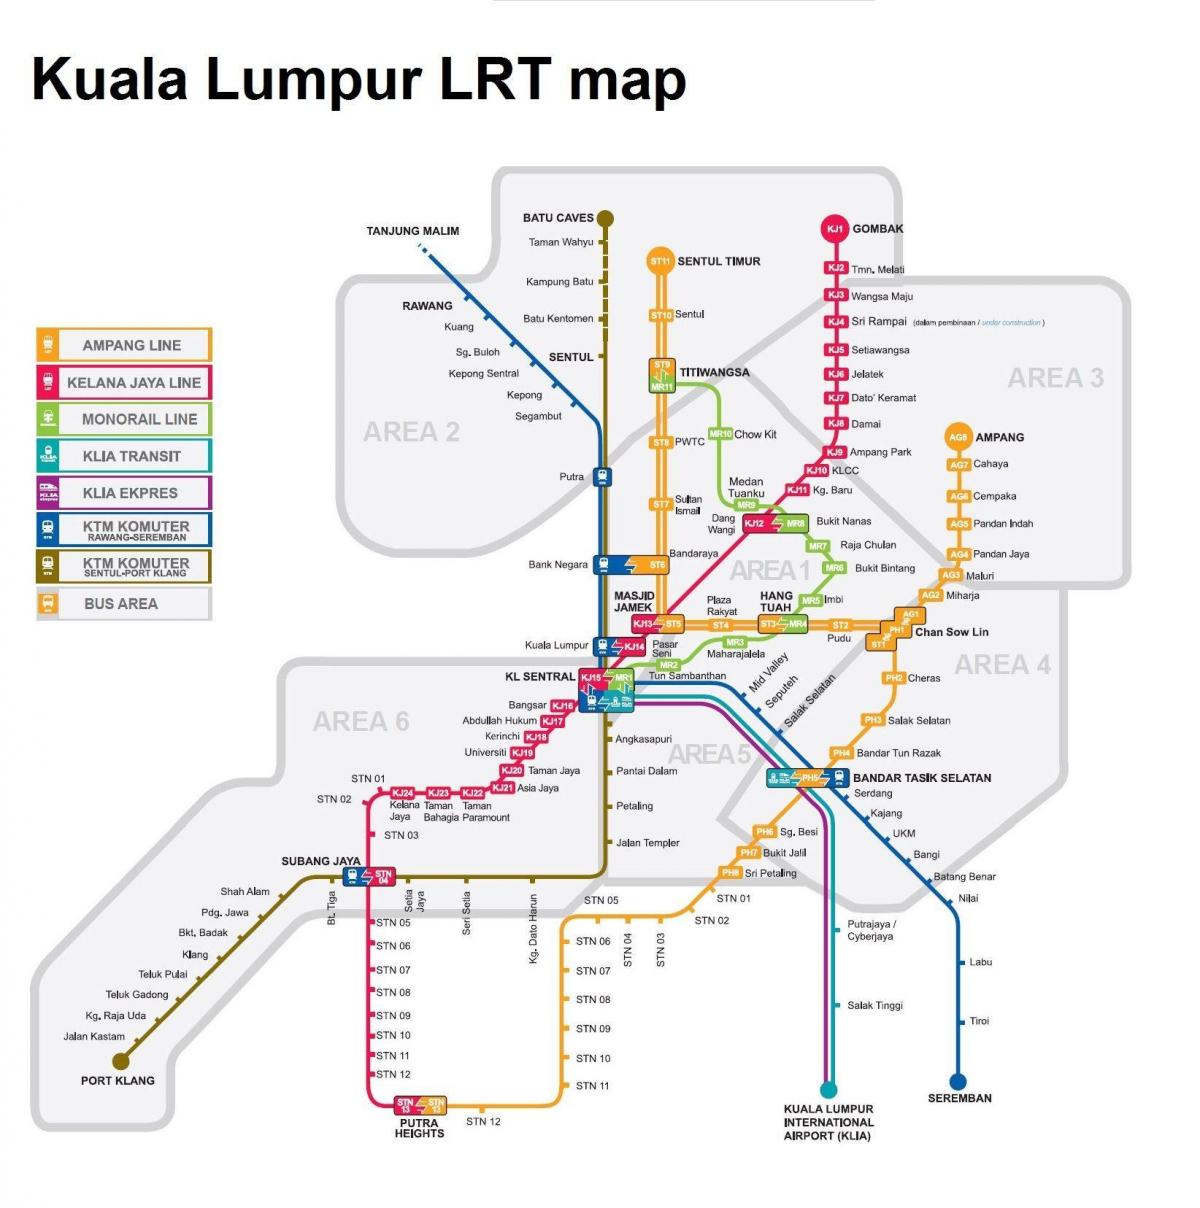 lrt hartë malajzi në vitin 2016